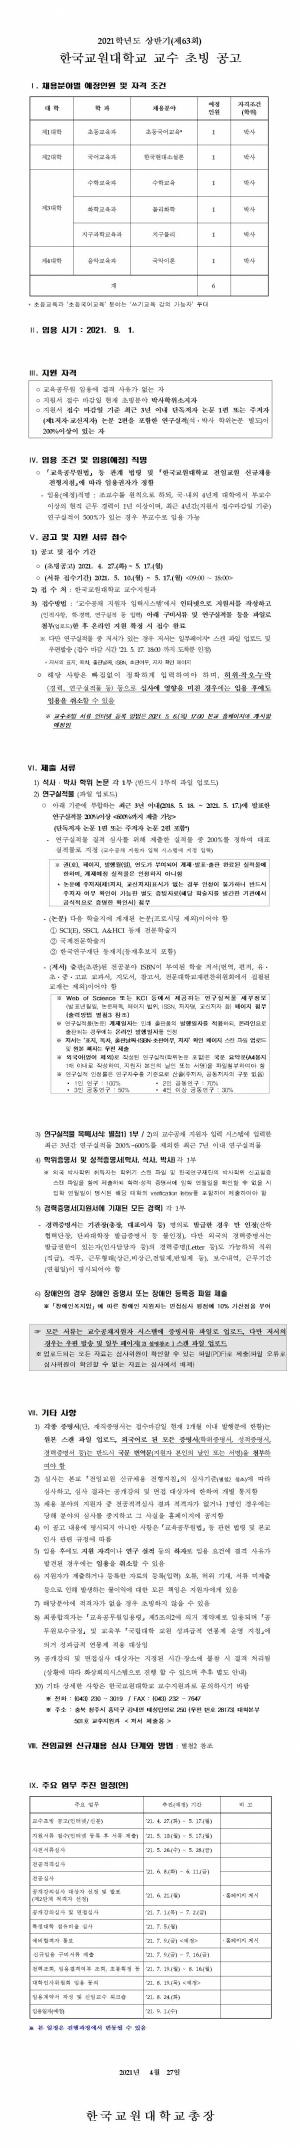 [교수초빙] 한국교원대학교 2021학년도 상반기 교수 초빙 공고